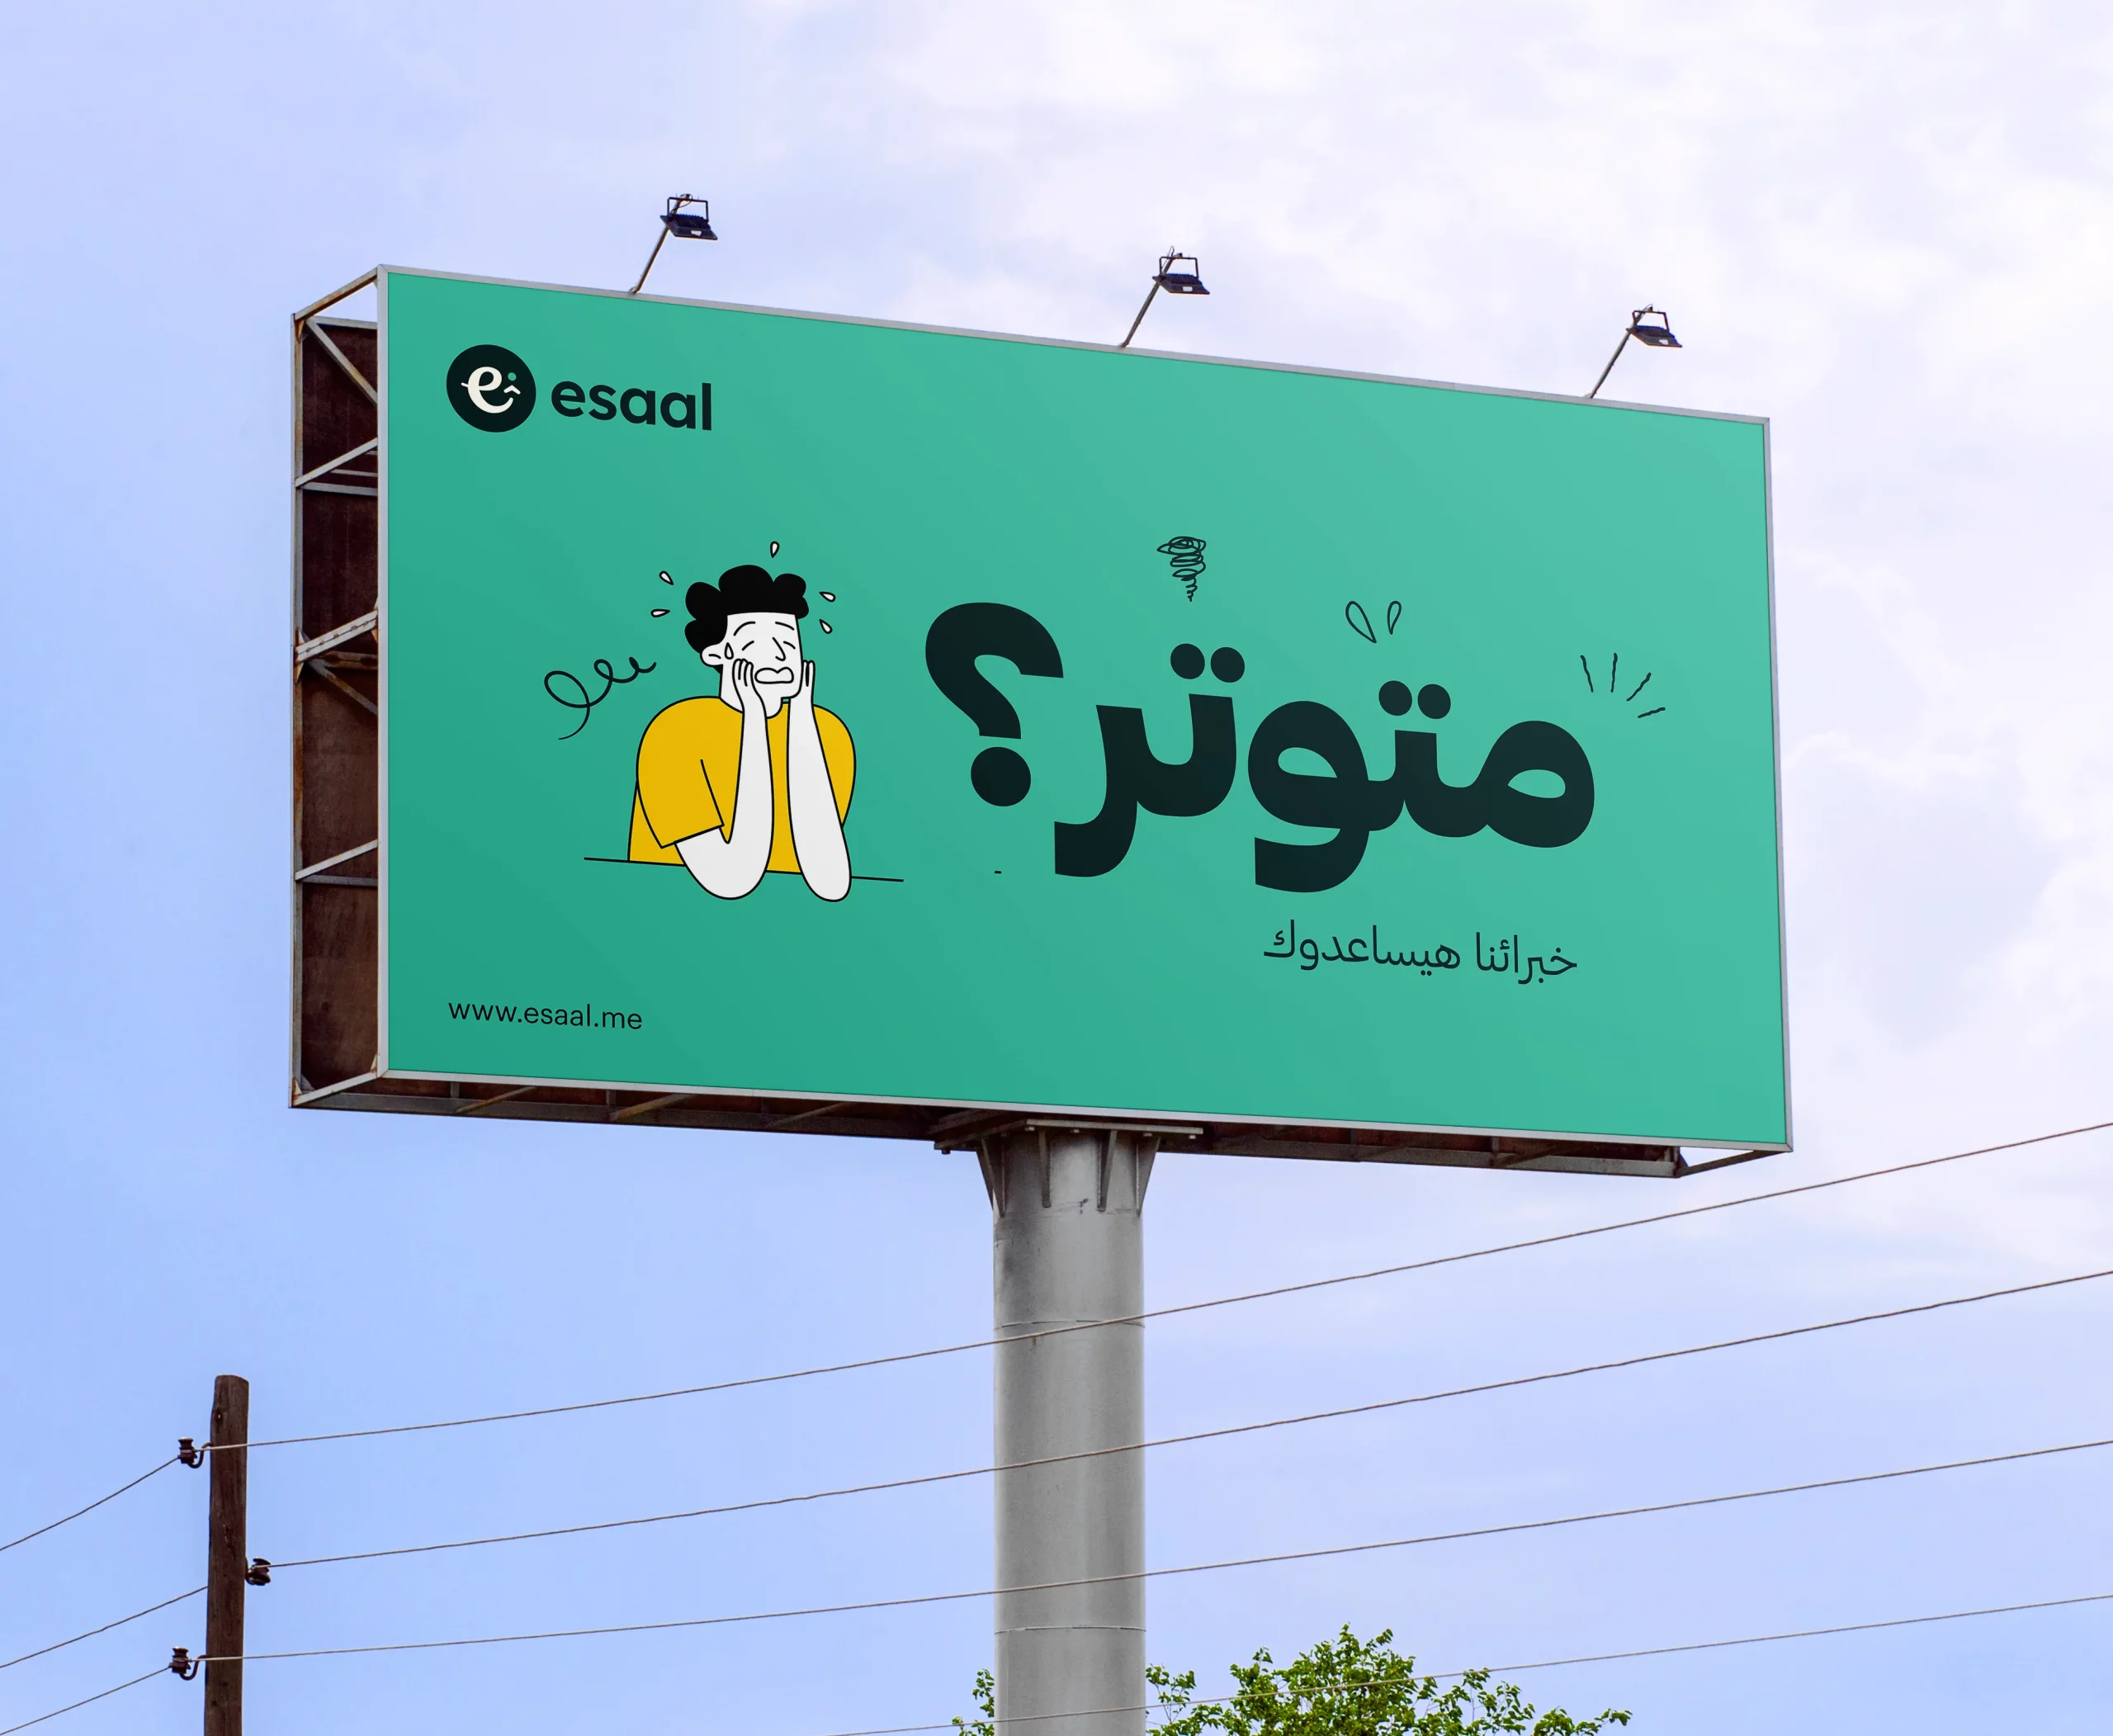 esaal-billboard-arabic-copy